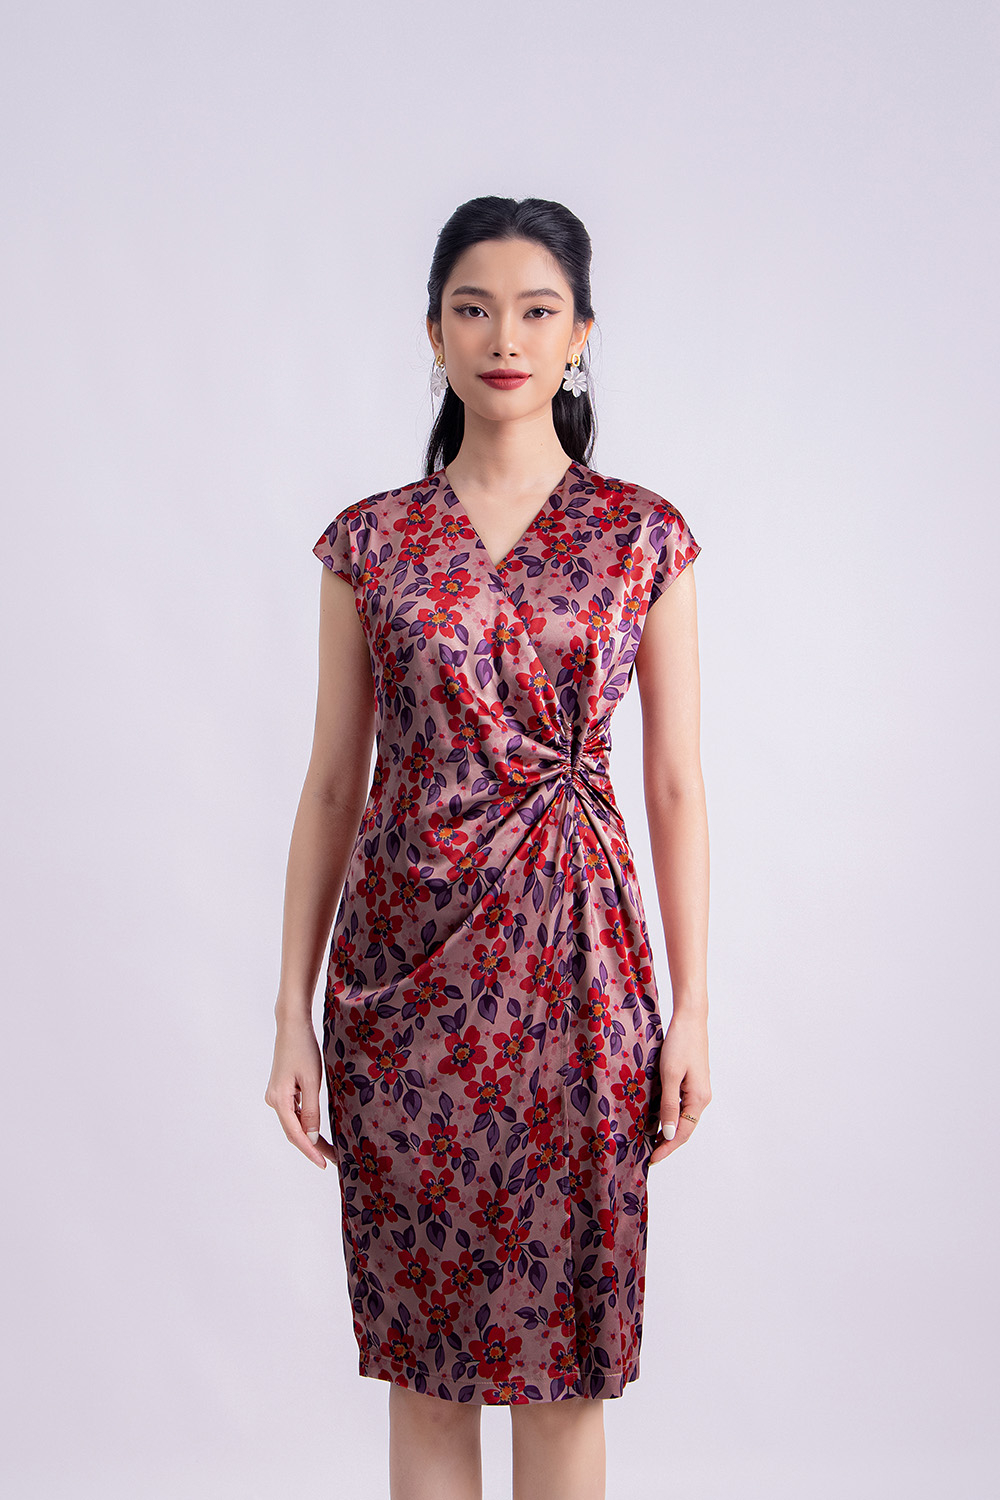 Top 18 Mẫu váy lụa thiết kế cao cấp | Đầm lụa Cardina | Giá ưu đãi